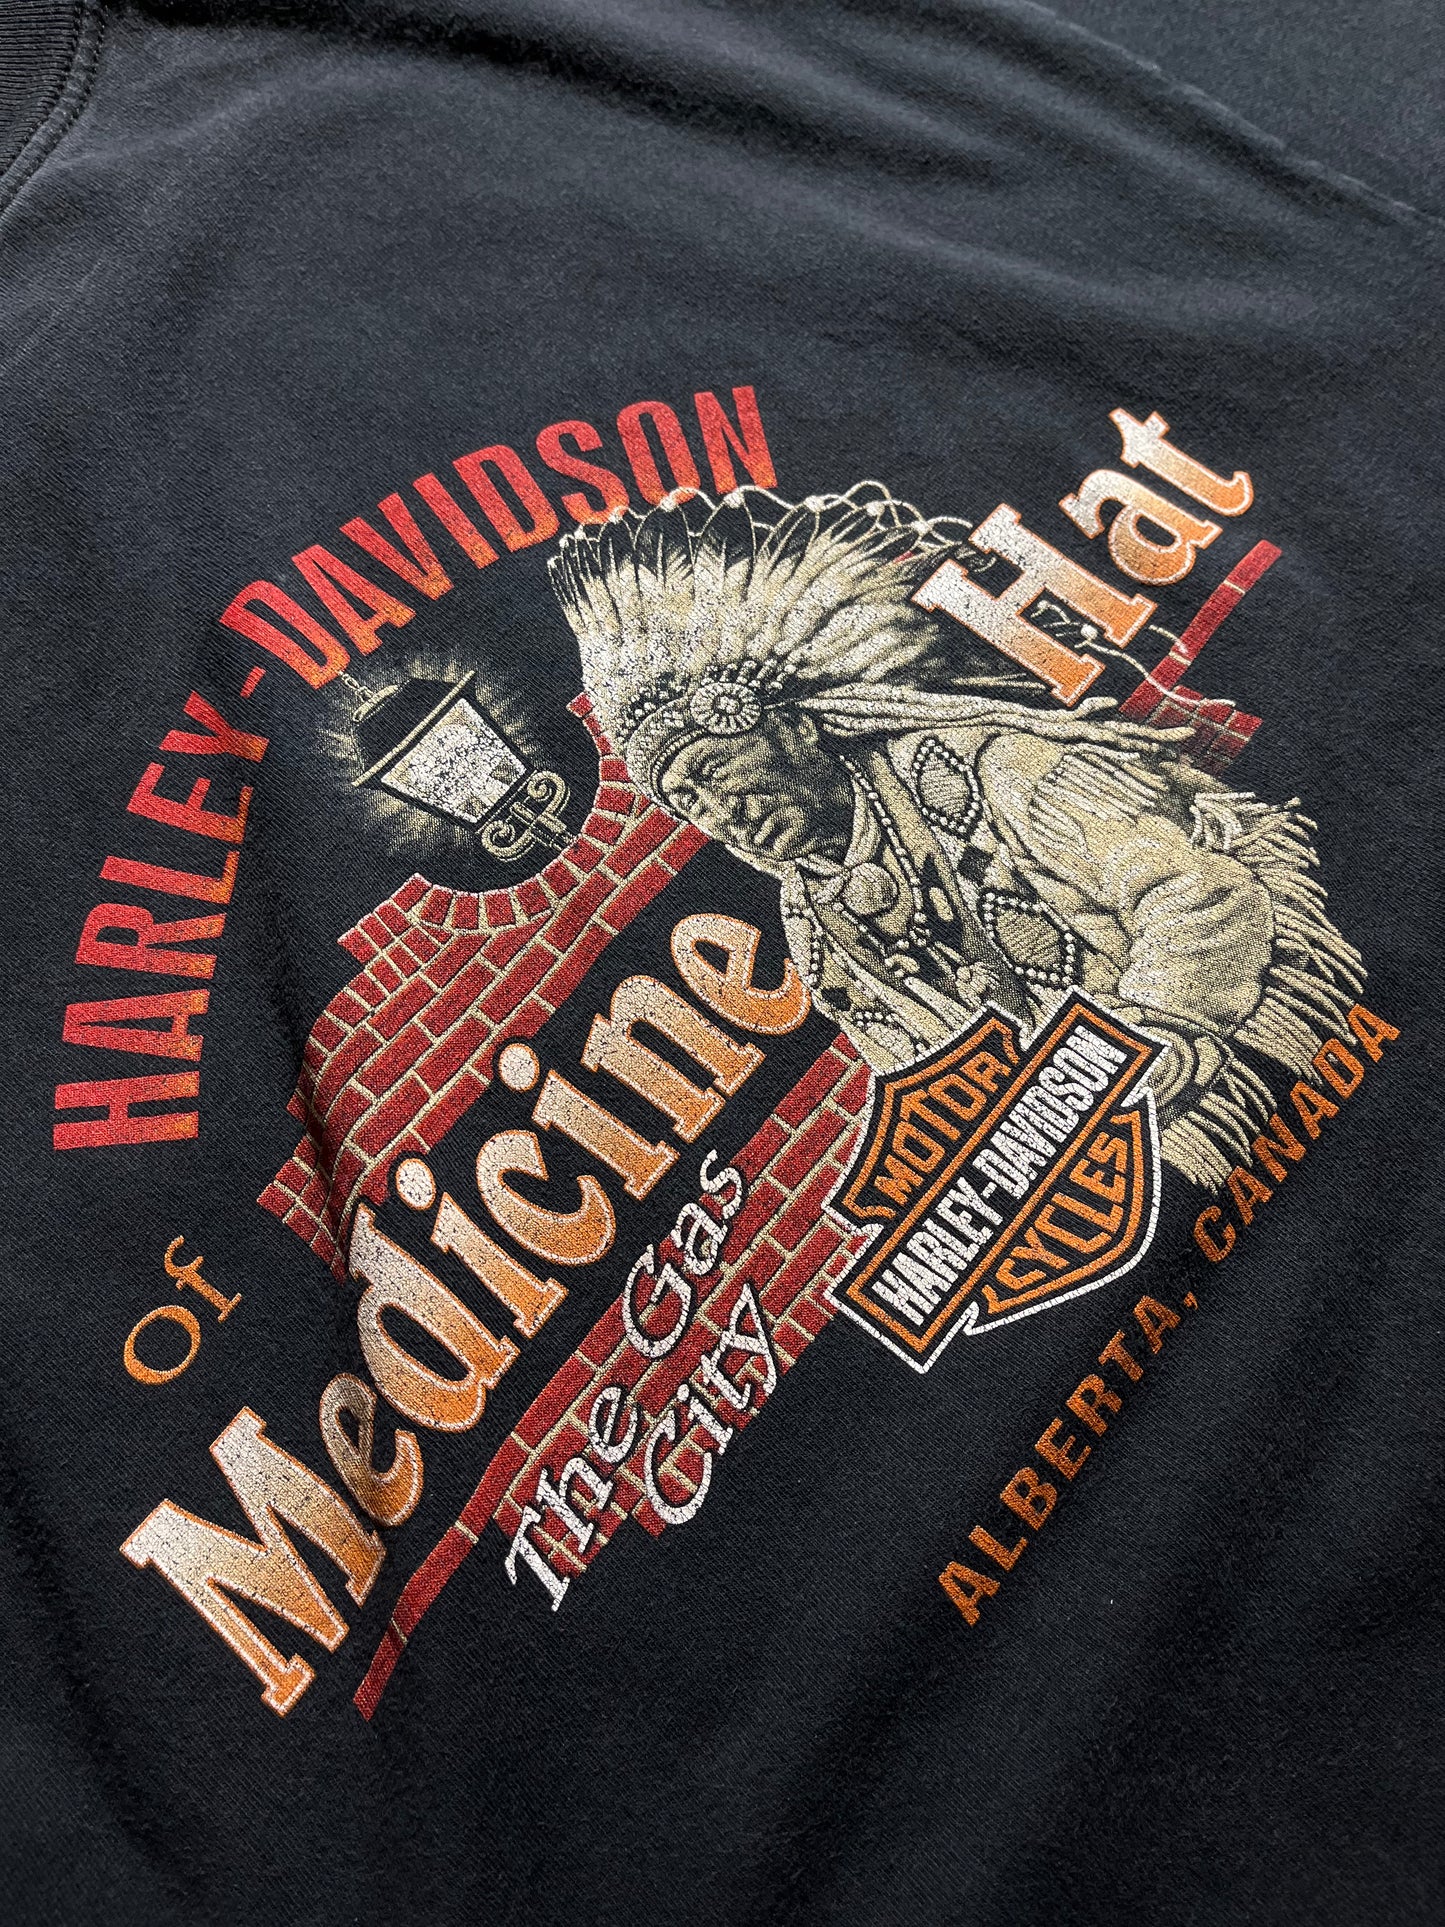 Vintage Harley Davidson T-Shirt Medicine Hat GAS CITY